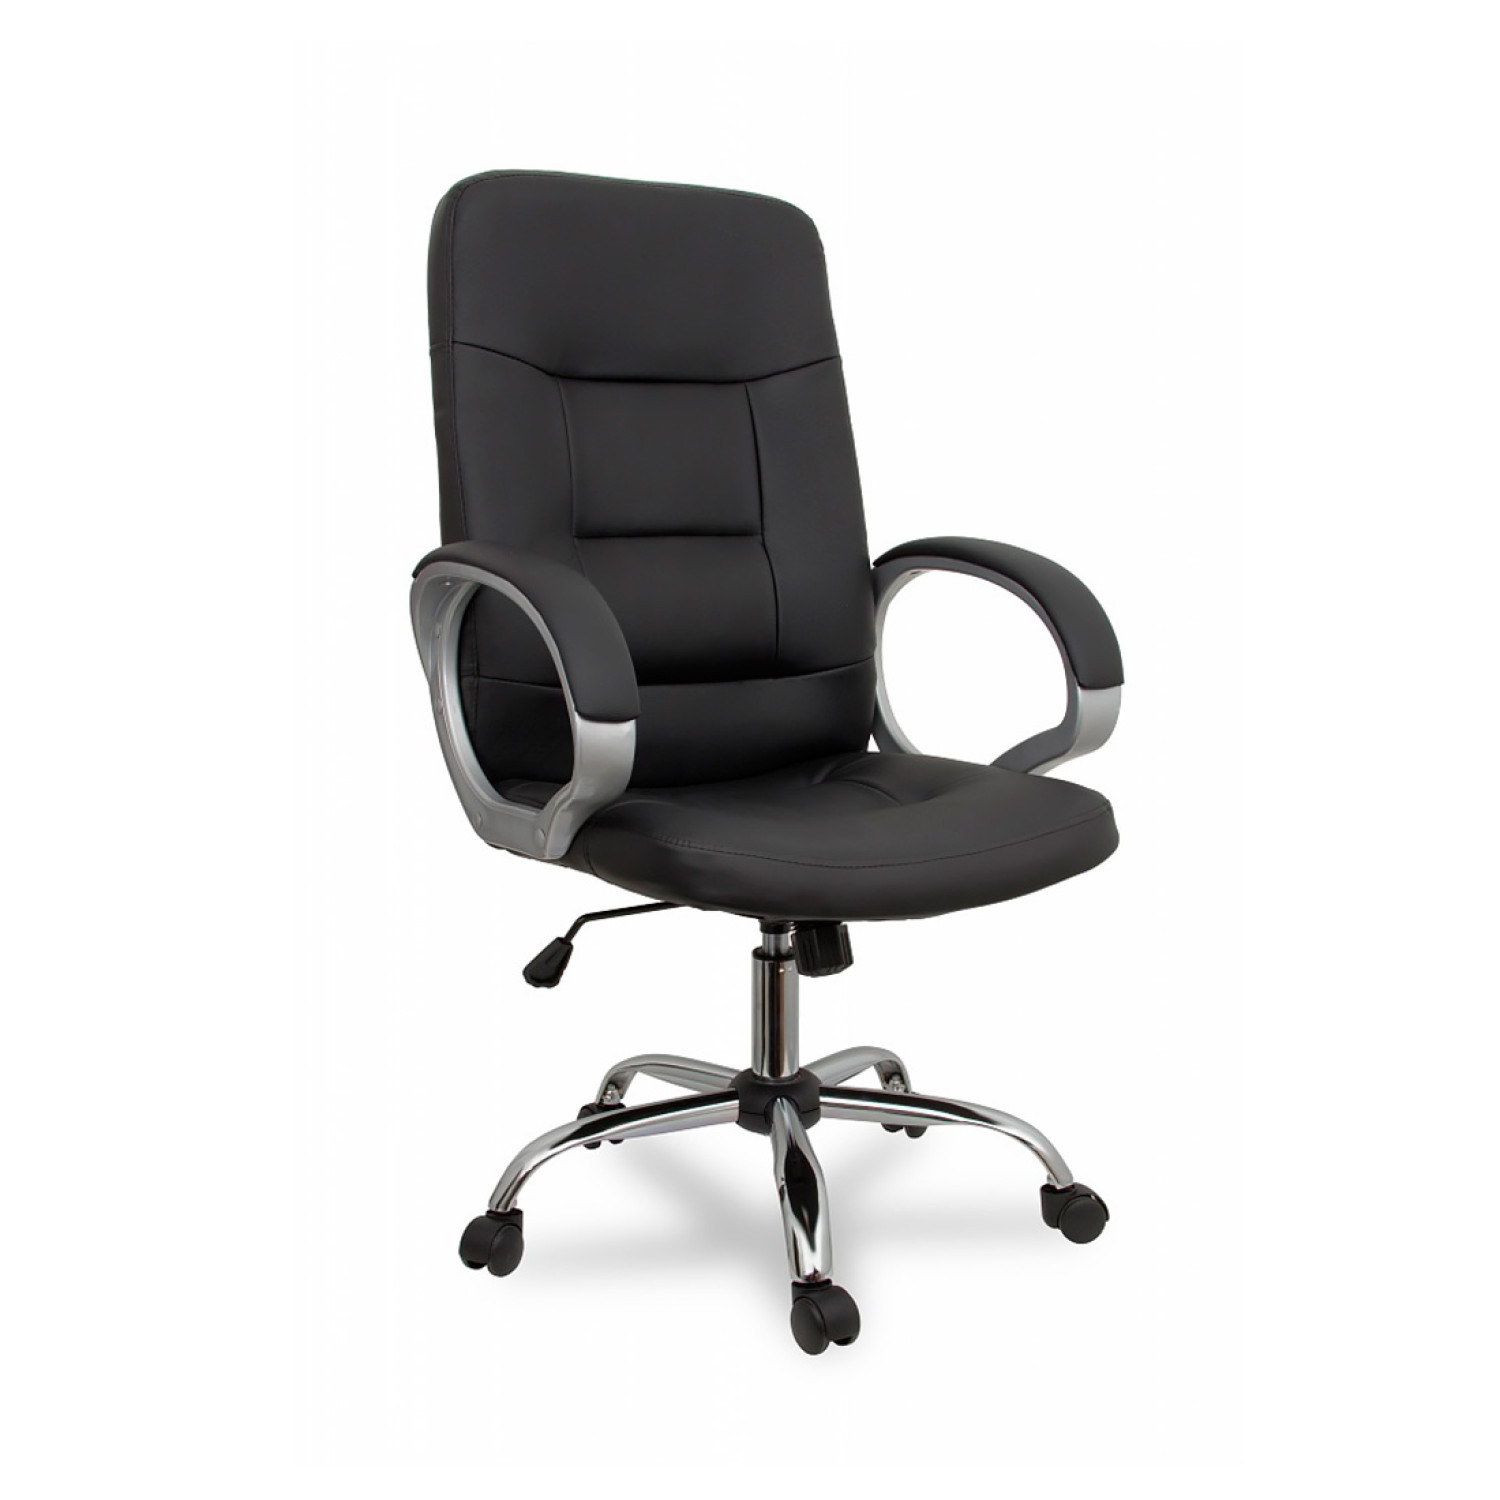 Компьютерные кресла College BX-3225-1 чёрный фото 1 — New Style of Furniture